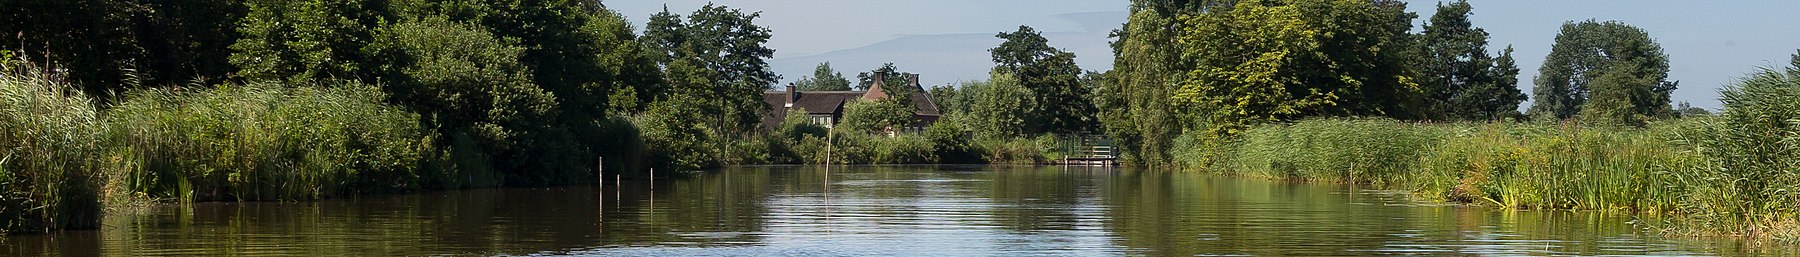 Woerdense Verlaat, rivier Meije naby die Bosweg foto12 2017-07-09 11.01 pagebanner.jpg